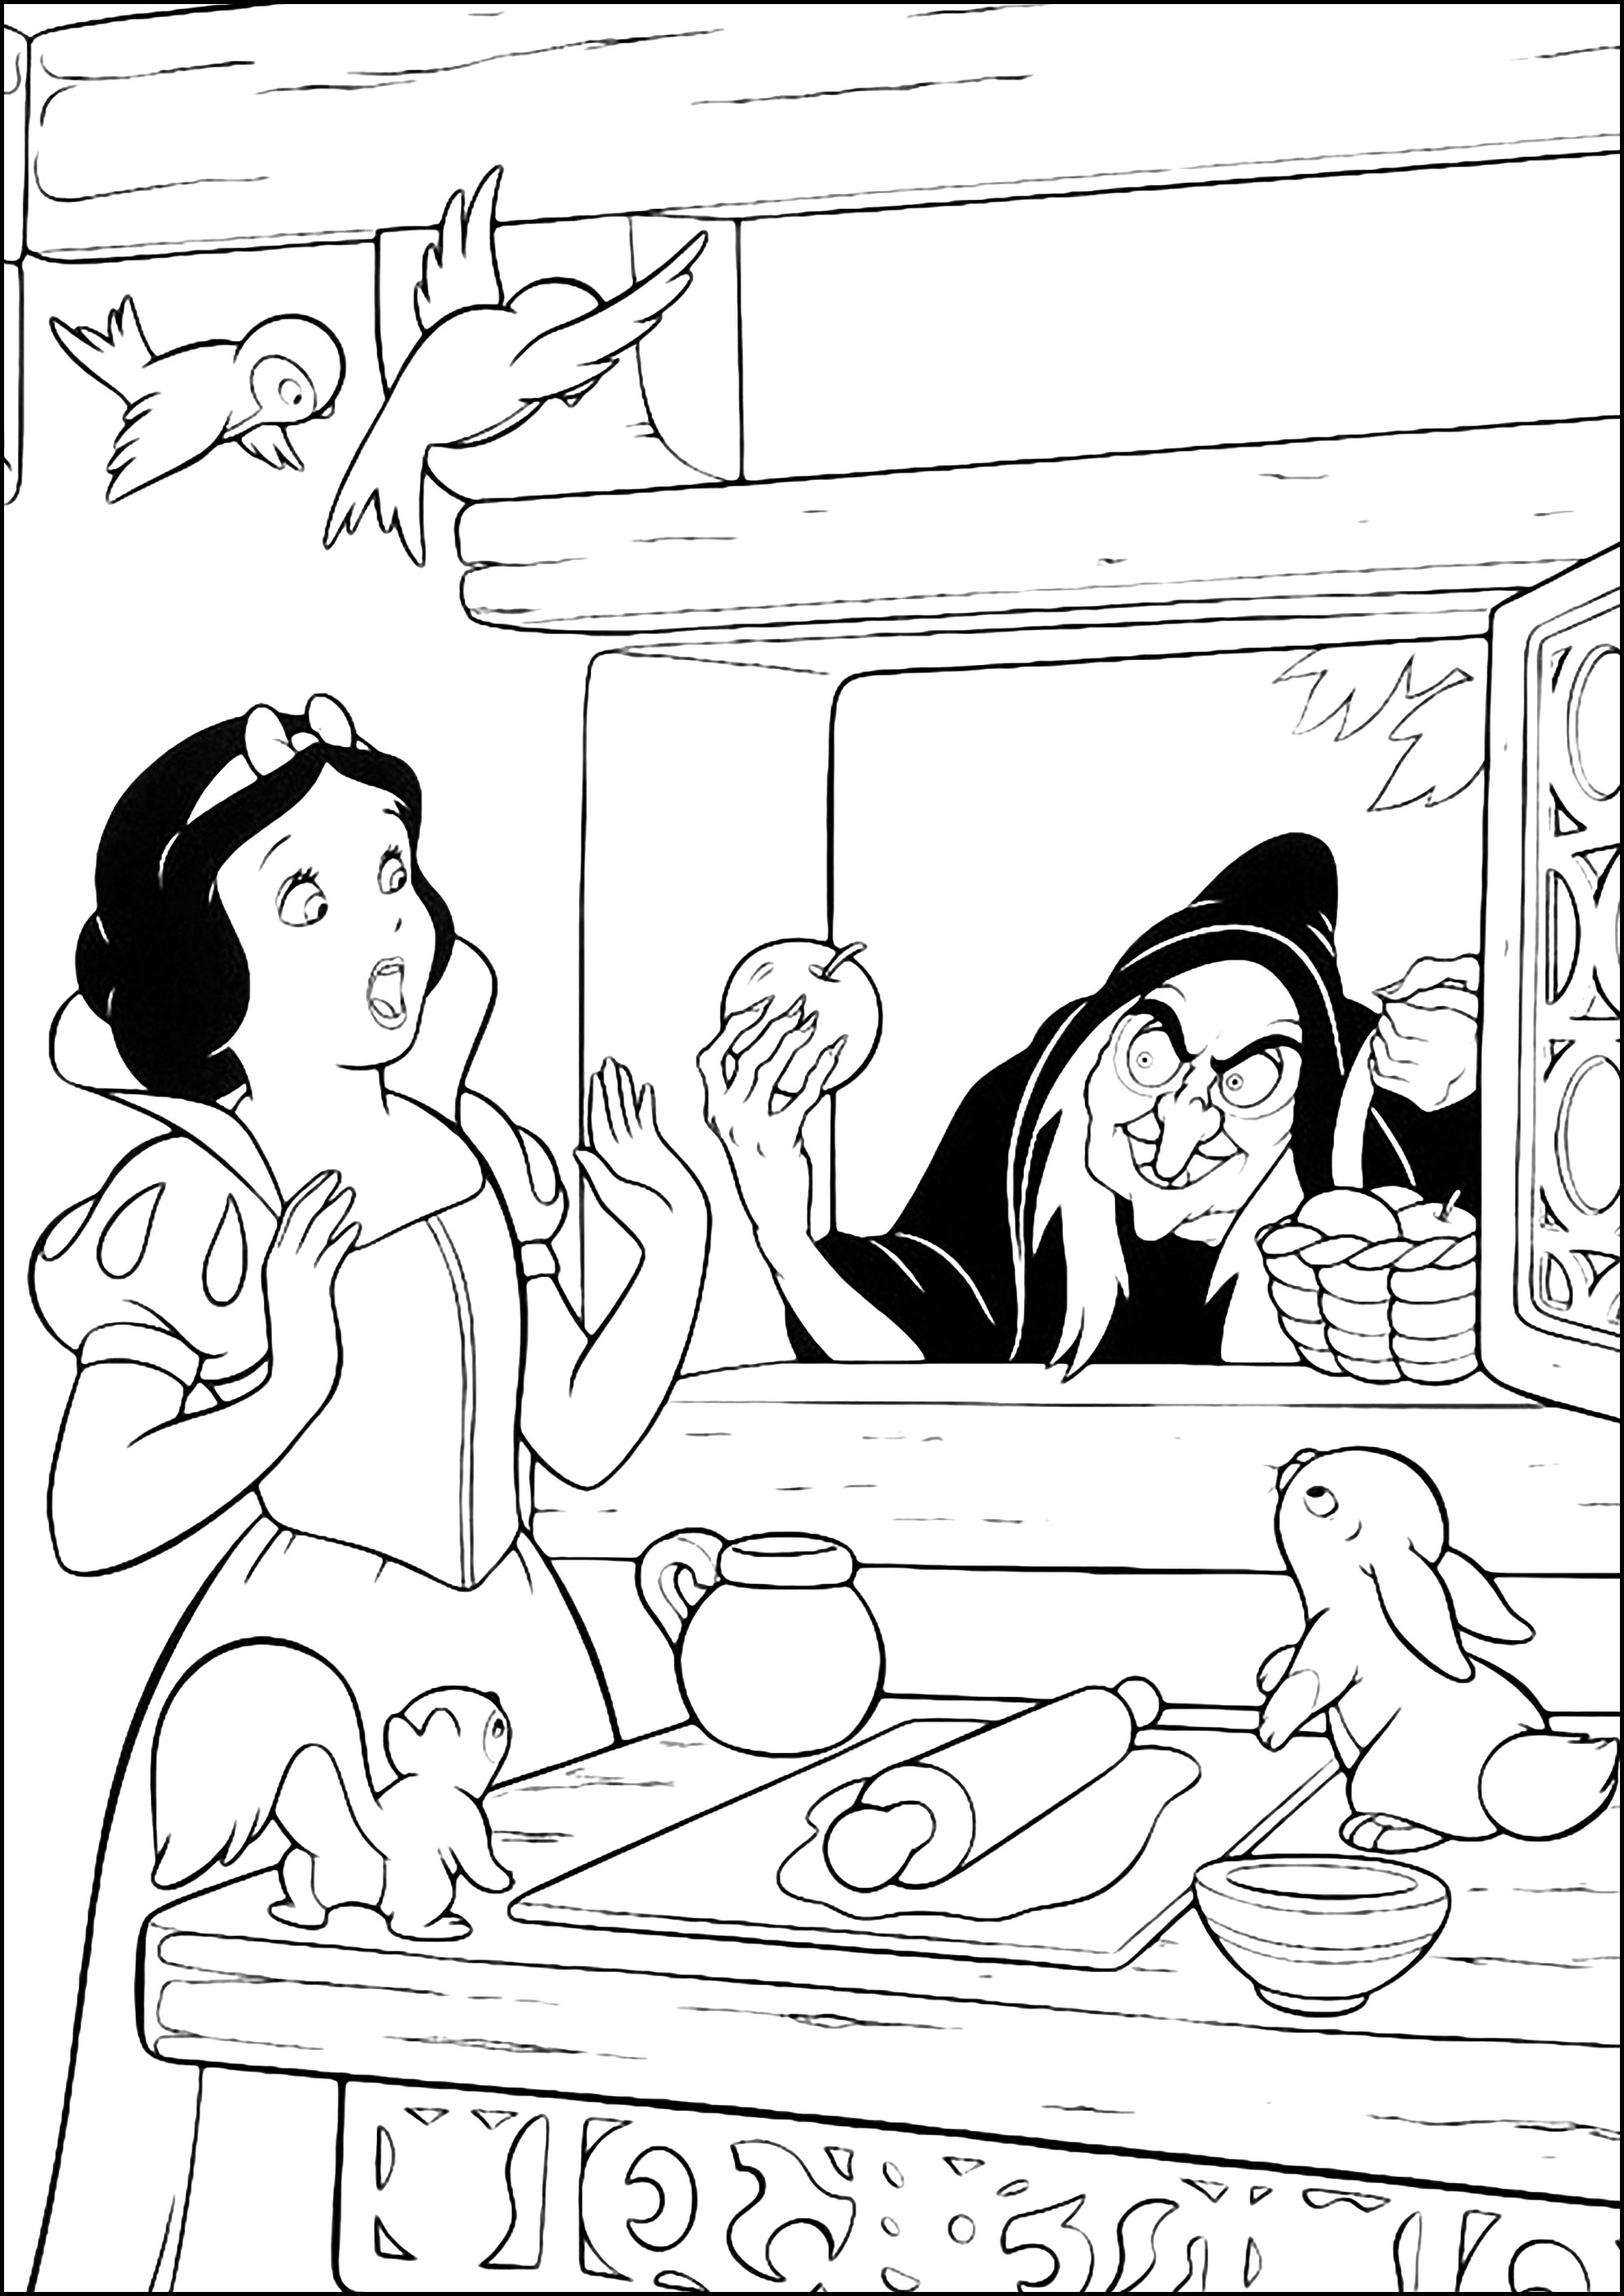 A Rainha Má transformou-se numa bruxa para dar uma maçã envenenada a Branca de Neve